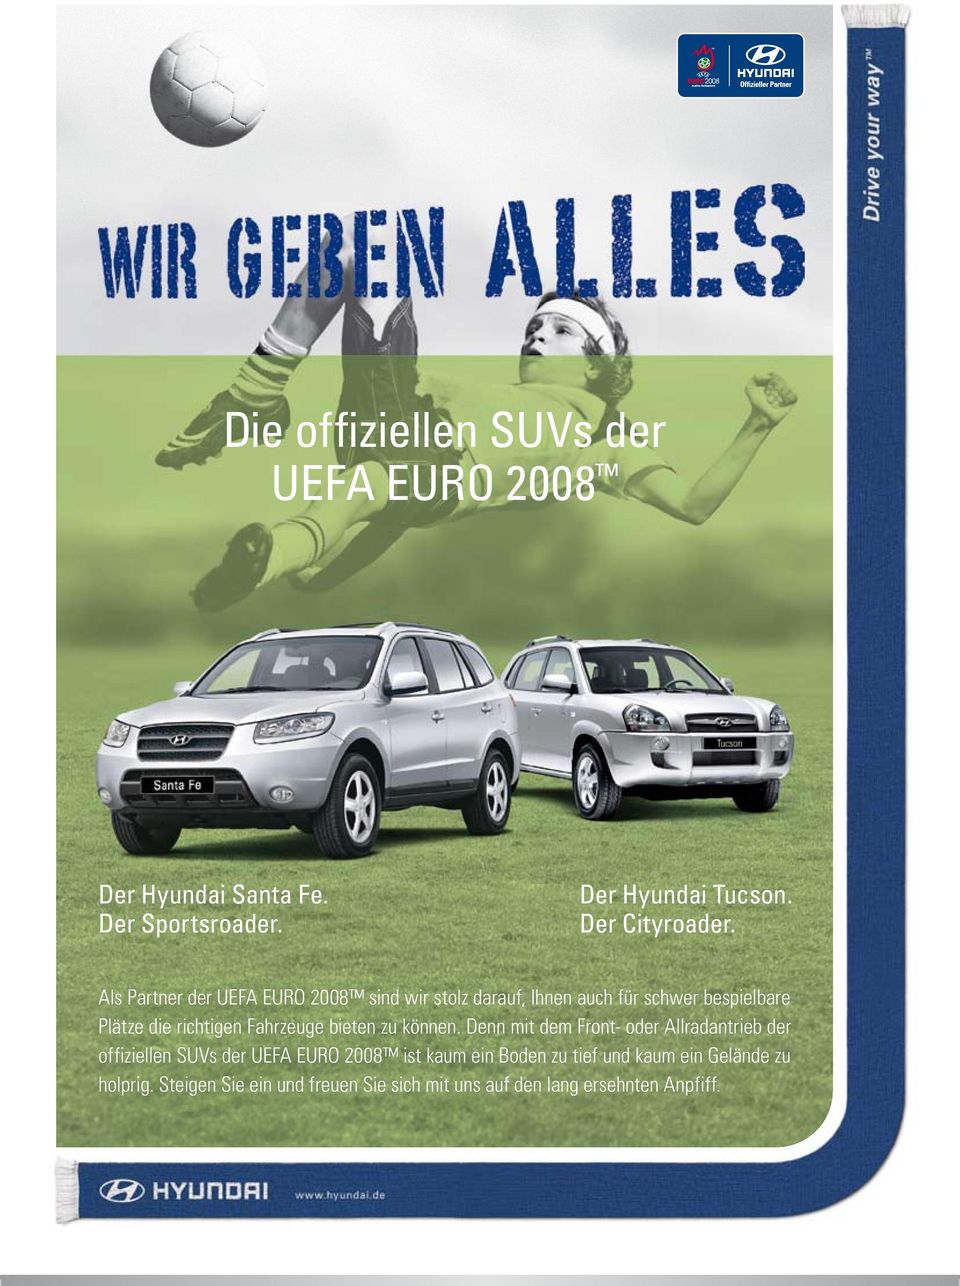 Als Partner der UEFA EURO 2008 sind wir stolz darauf, Ihnen auch für schwer bespielbare Plätze die richtigen Fahrzeuge bieten zu